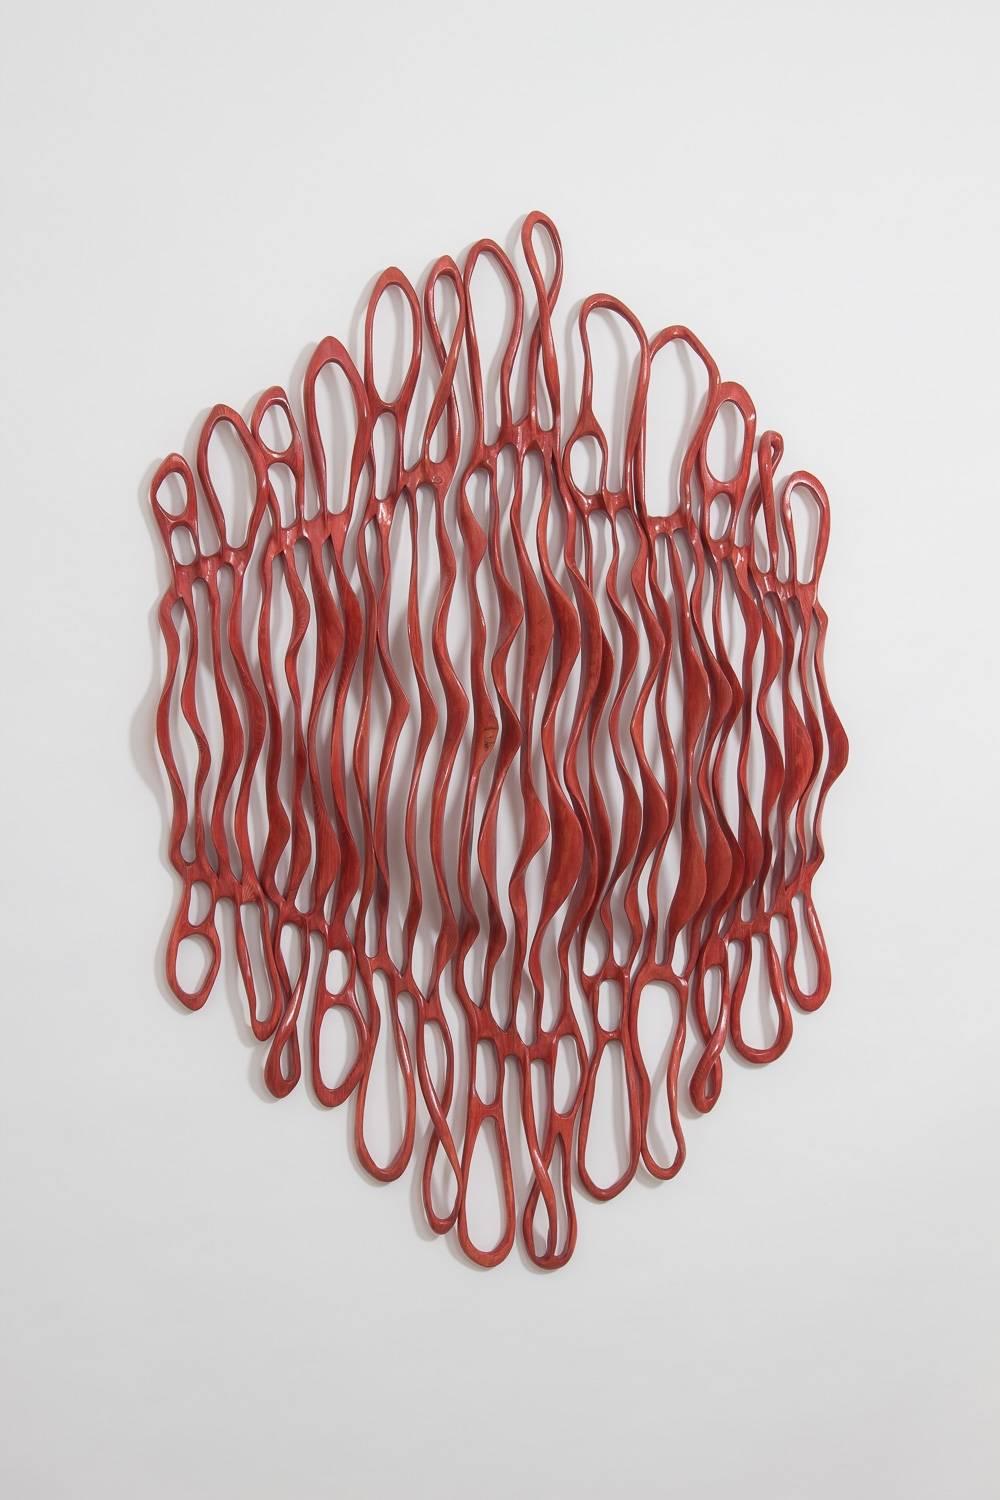 Red Dawn Cascade - Sculpture by Caprice Pierucci